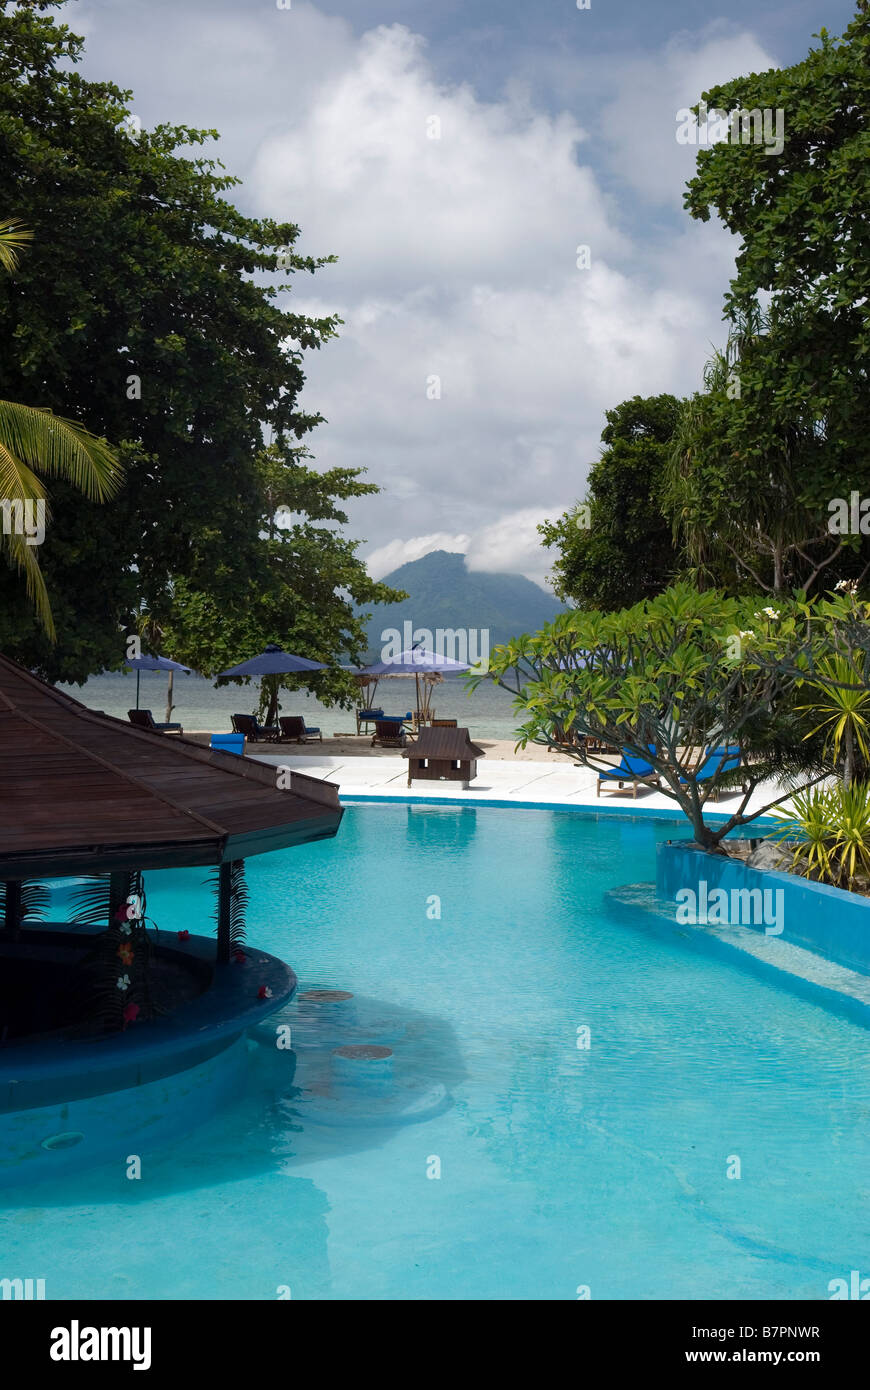 El Siladen Island Resort and Spa, Sulawesi Foto de stock